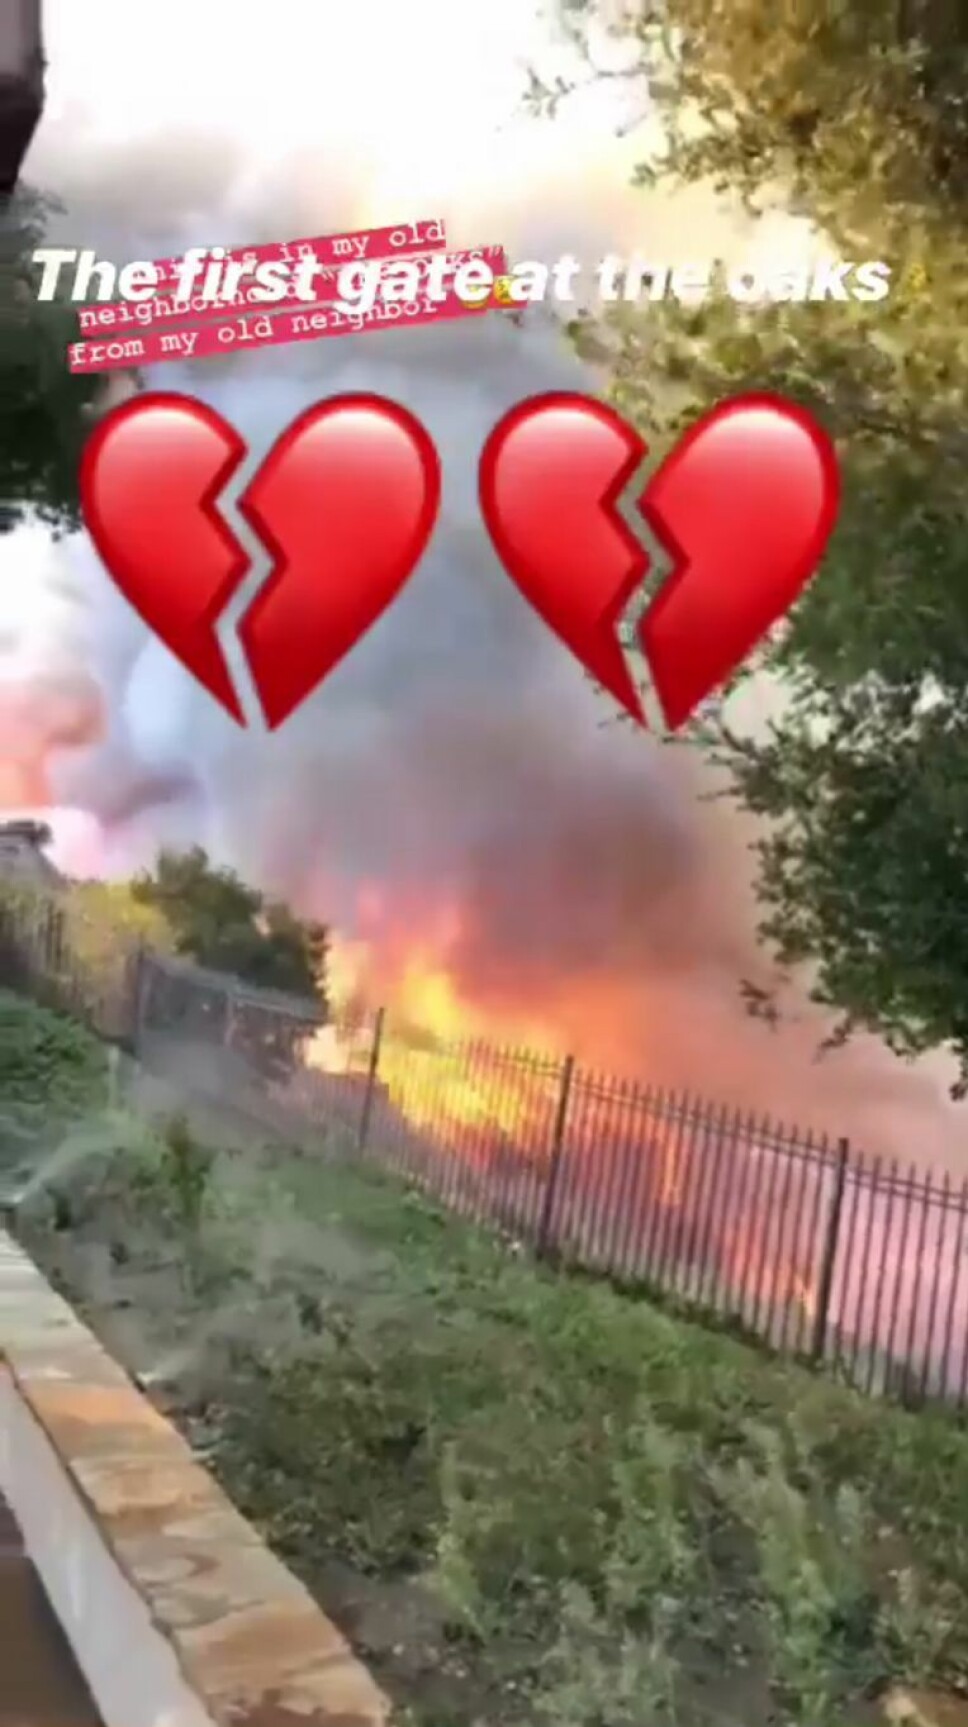 STORY: Khloe Kardashian delte dette bildet av brannens herjinger i området hun bor i.